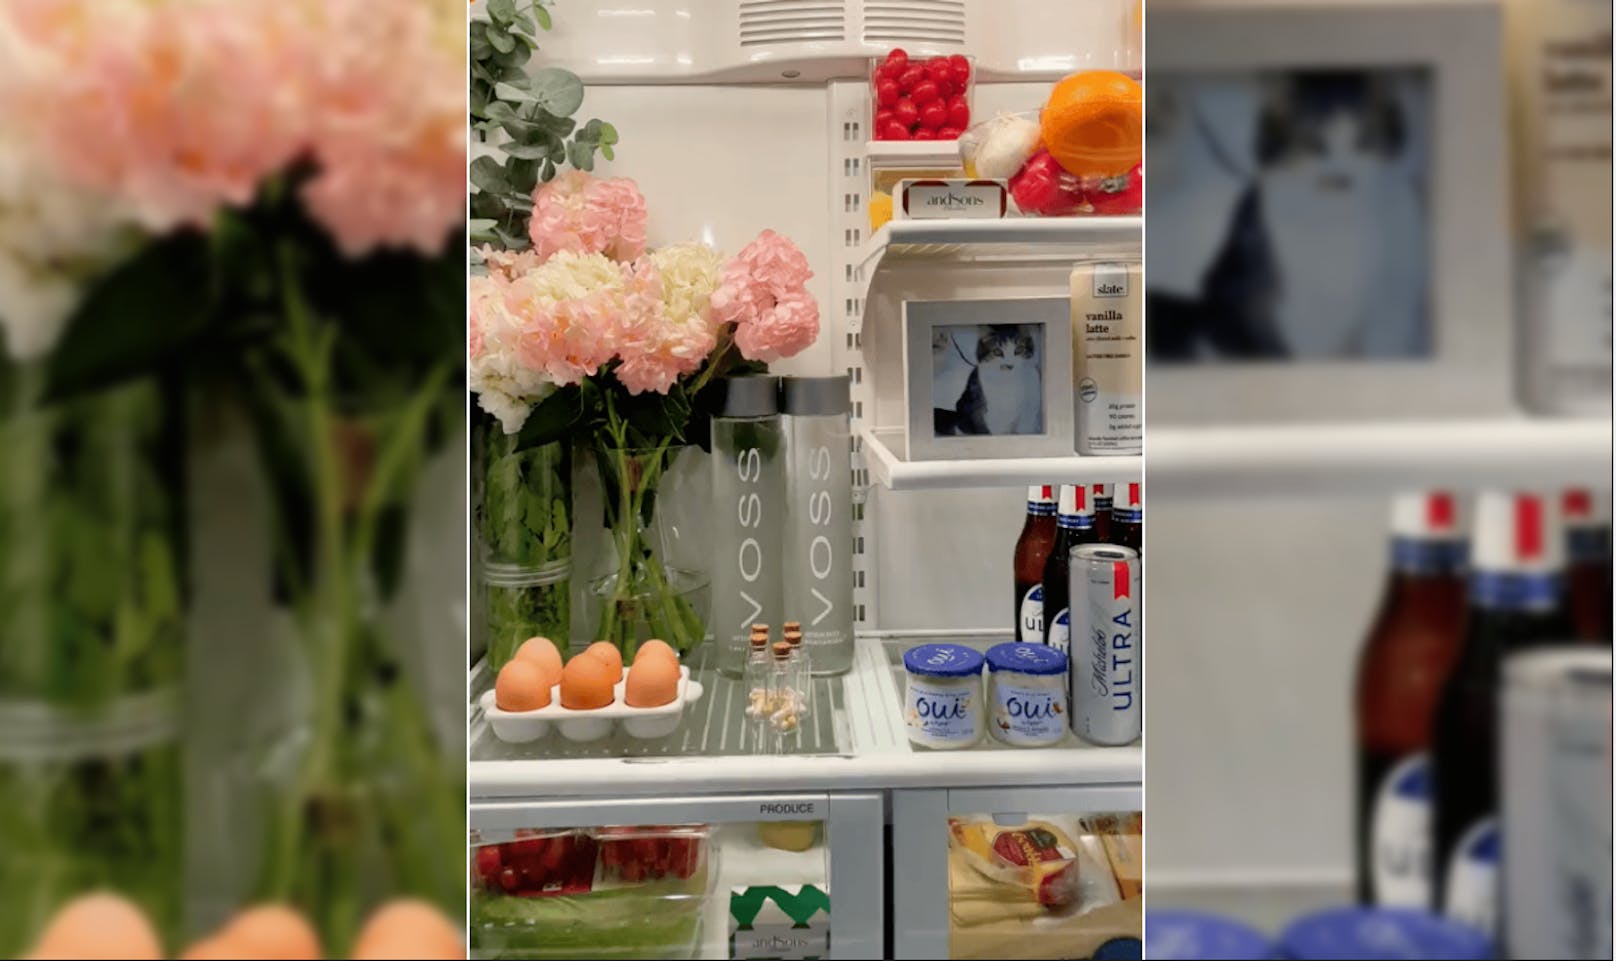 Eve Scampoli dekoriert ihren Kühlschrank mit Blumen und Bildern.